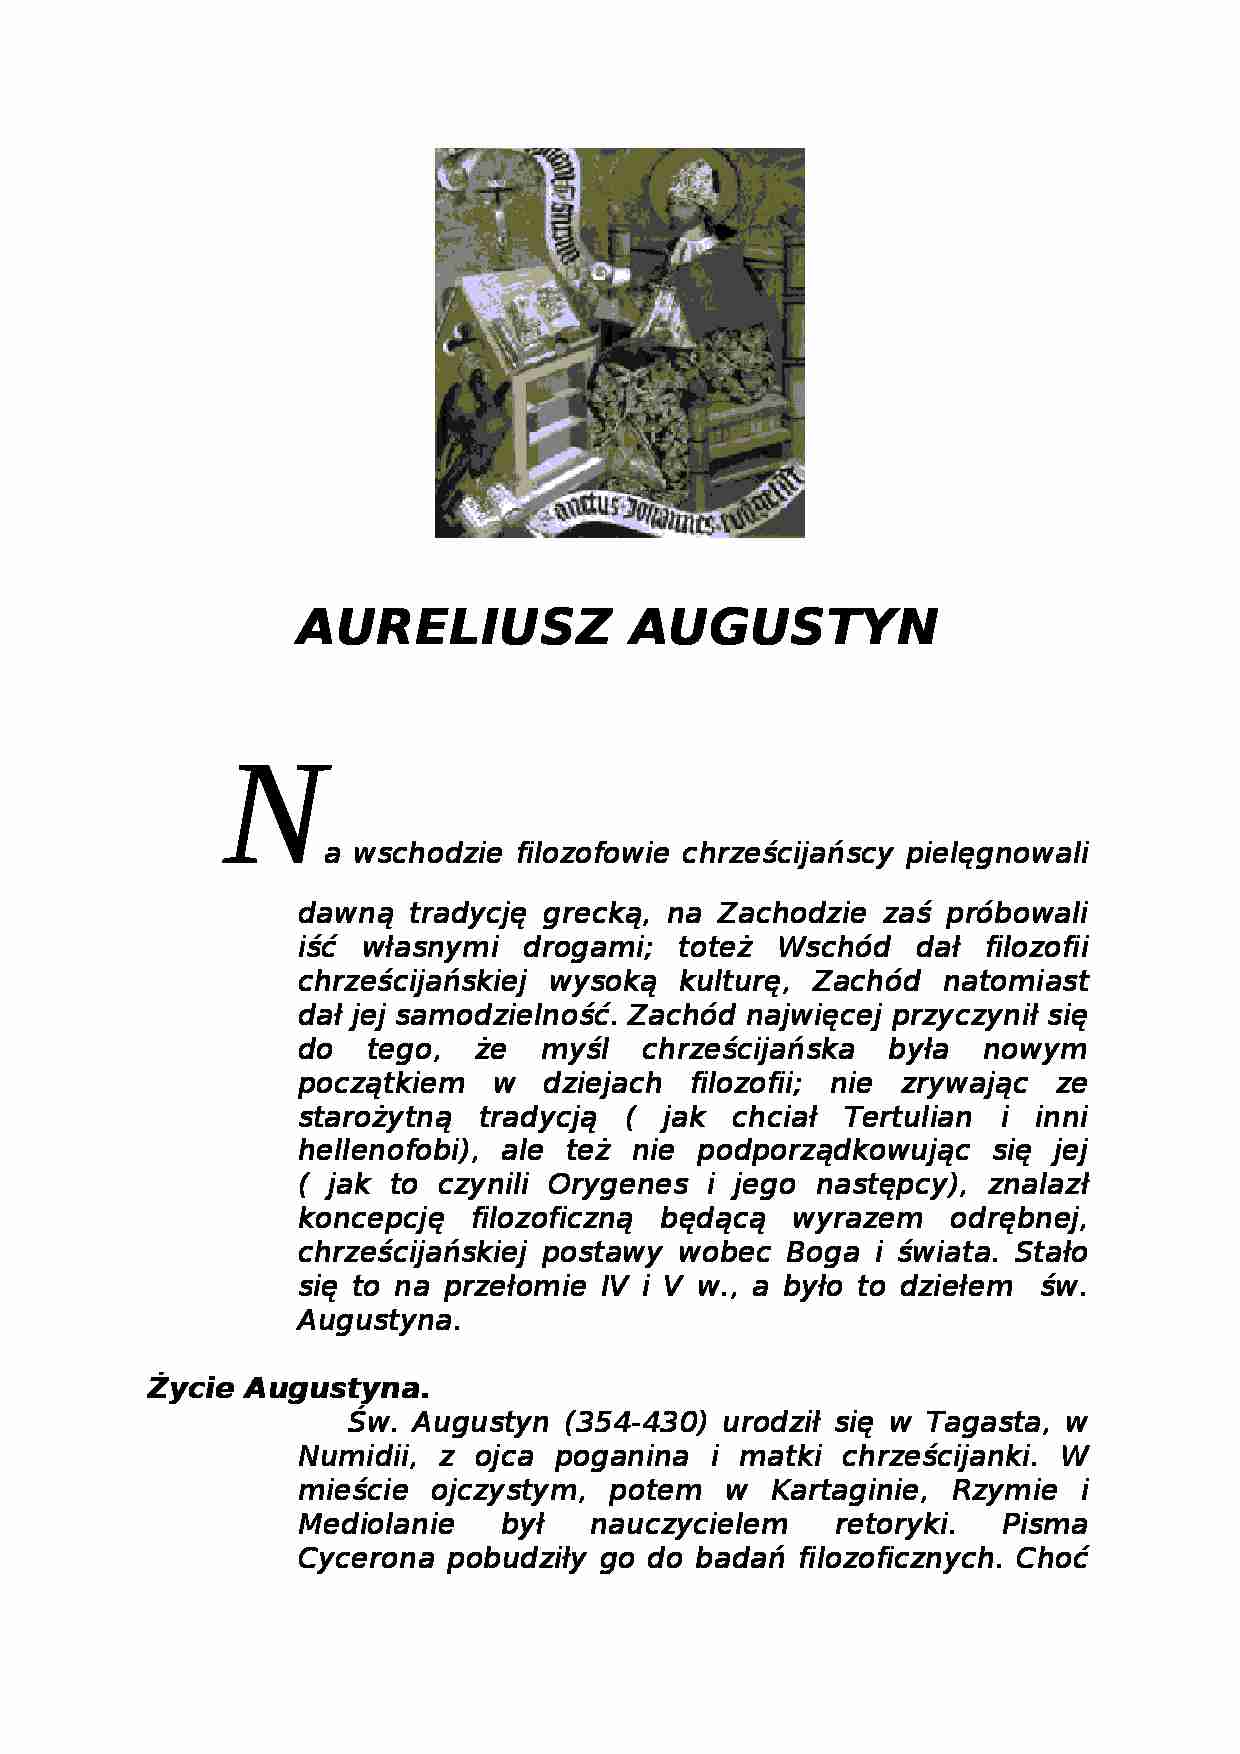 Biografia - Aureliusz Augustyn - strona 1